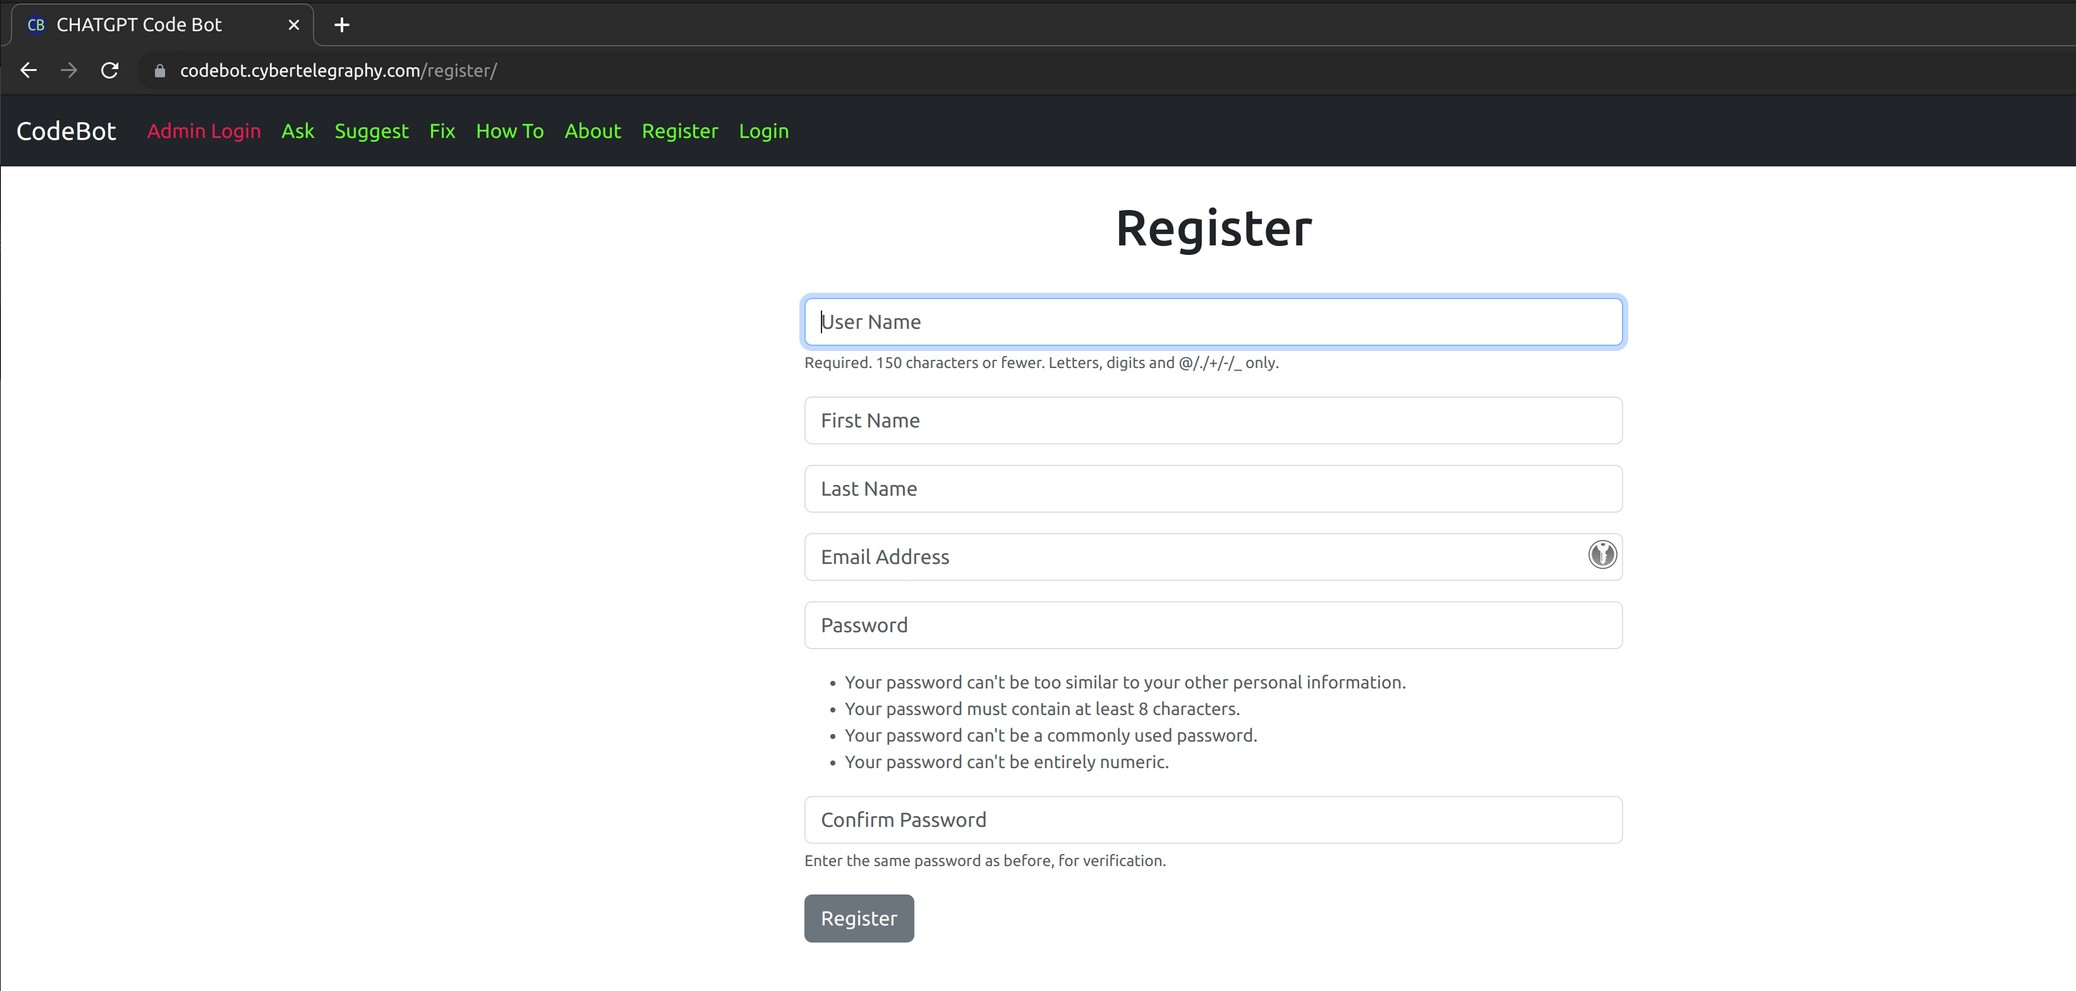 Register Image